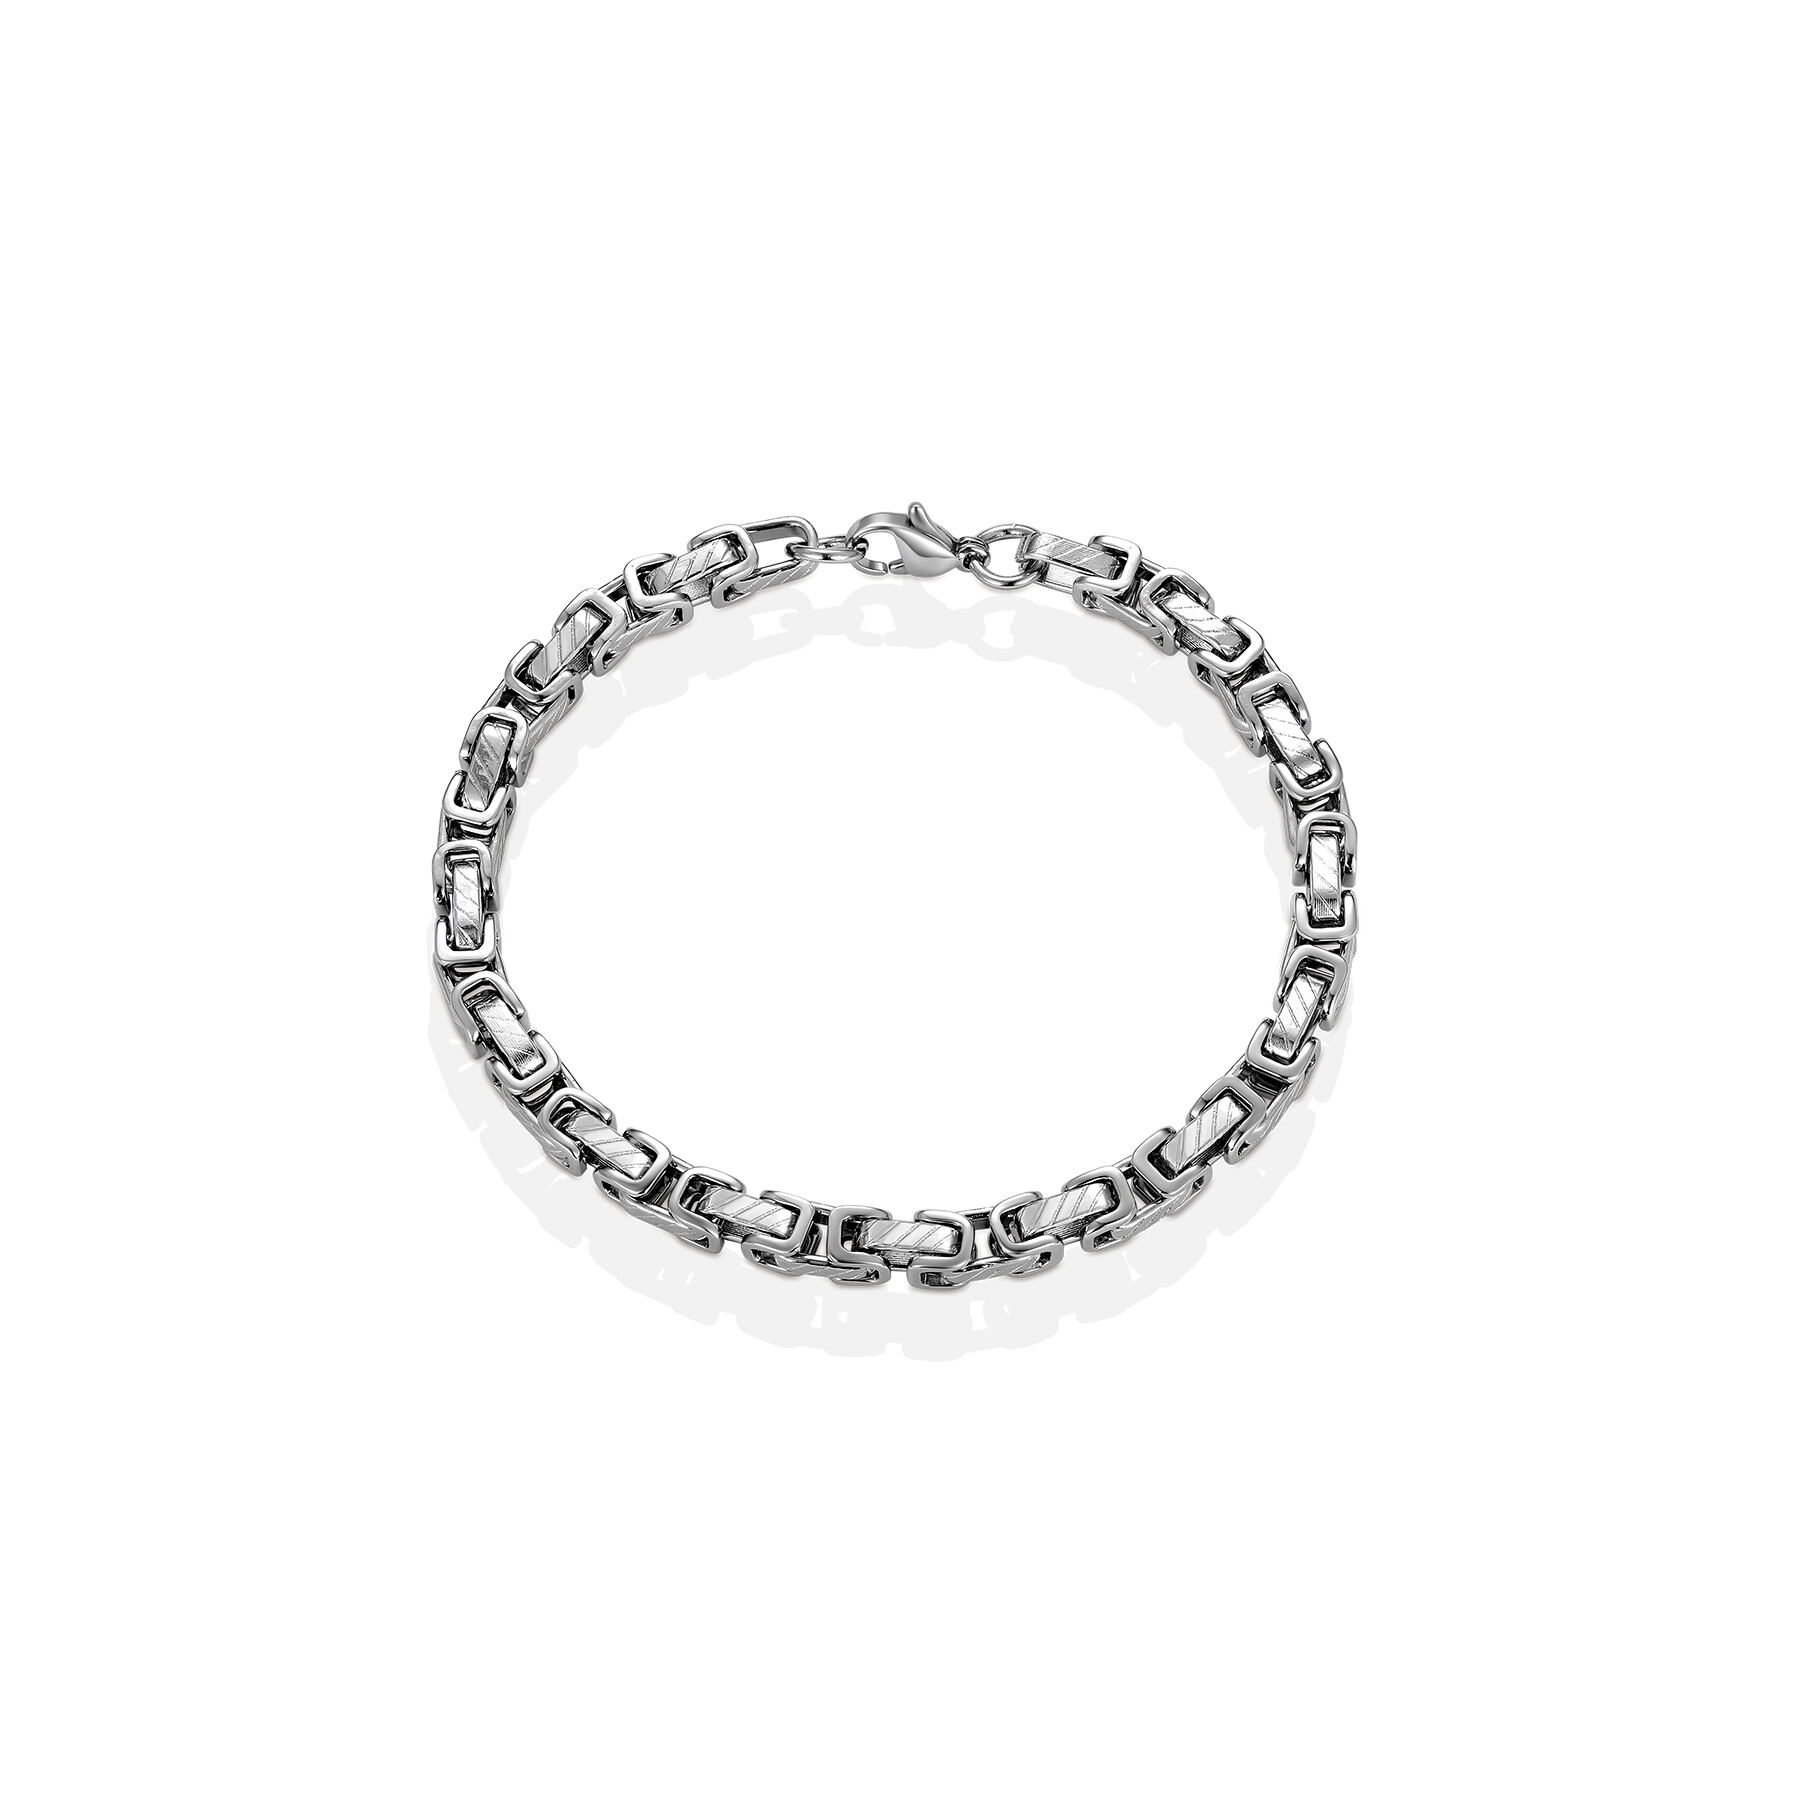 New design complex silver square chain bracelet jewelry